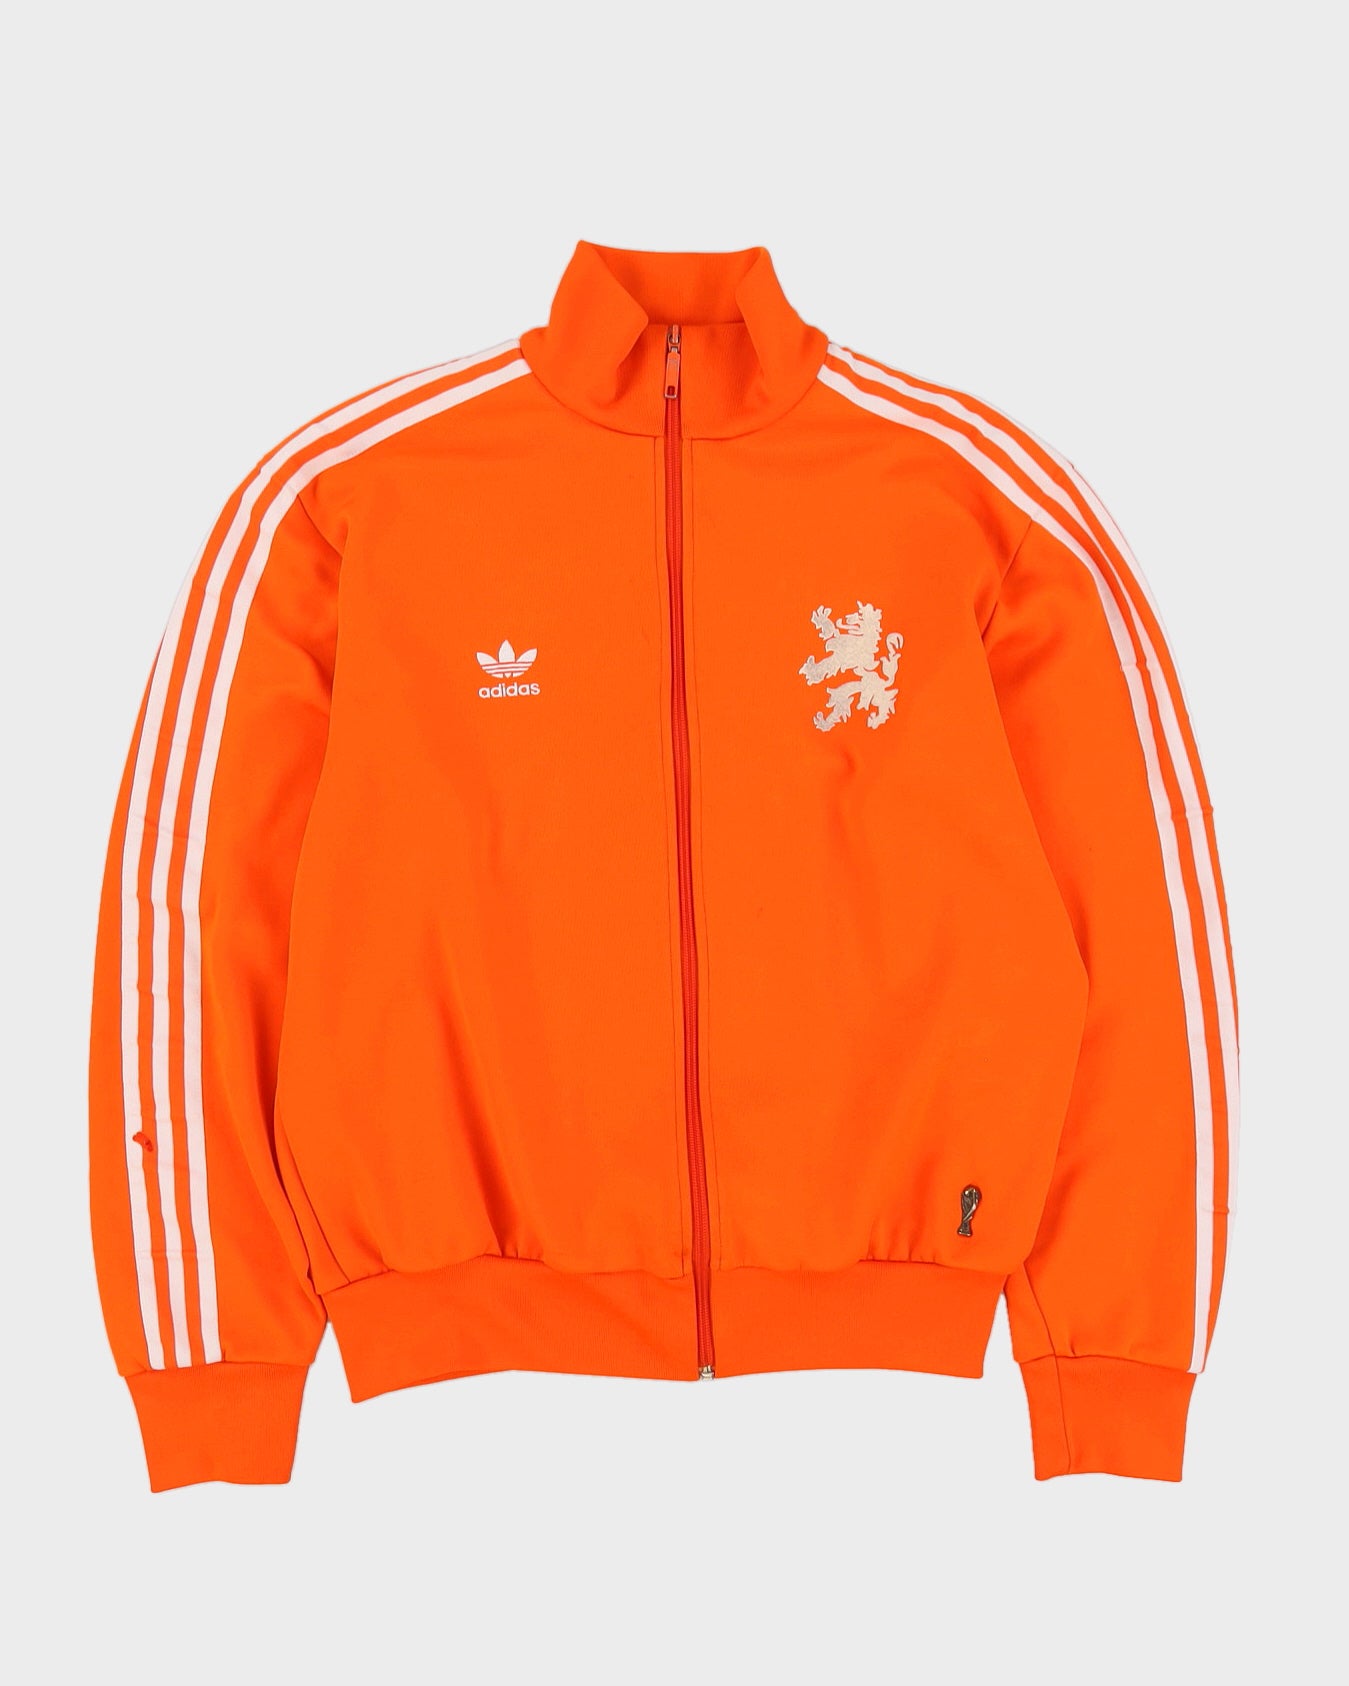 Adidas Orange 1974 Repro Holland Netherlands Orange Track Jacket - L – Rokit